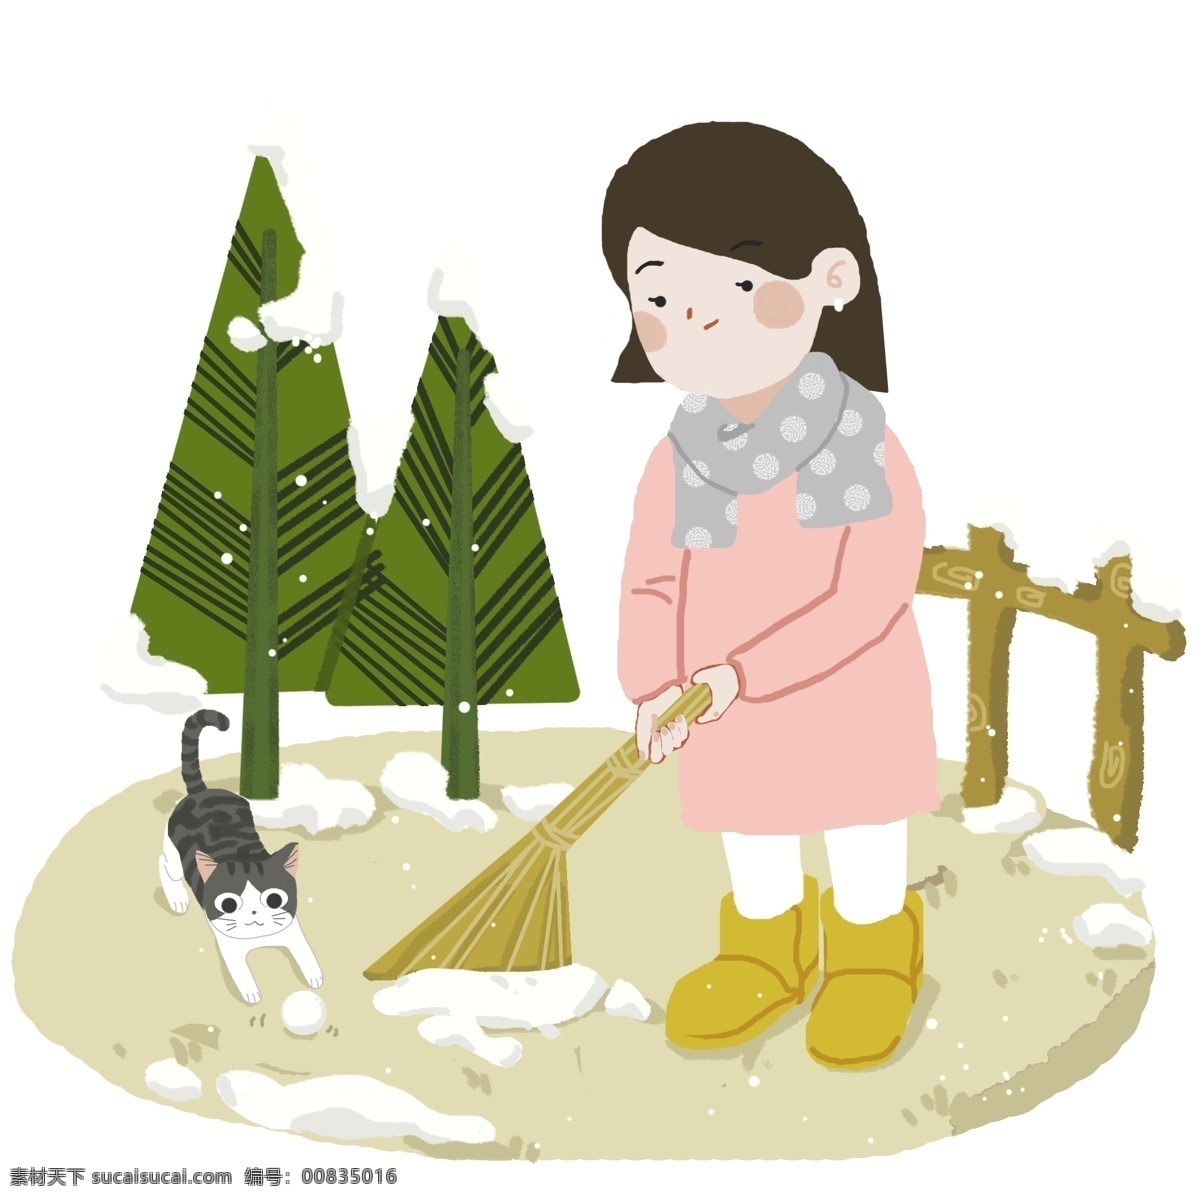 女孩 院子 里 扫雪 图 冬天 松树 猫咪 围巾 雪 积雪 打扫 玩雪 玩耍 手绘 有趣 雪球 小寒